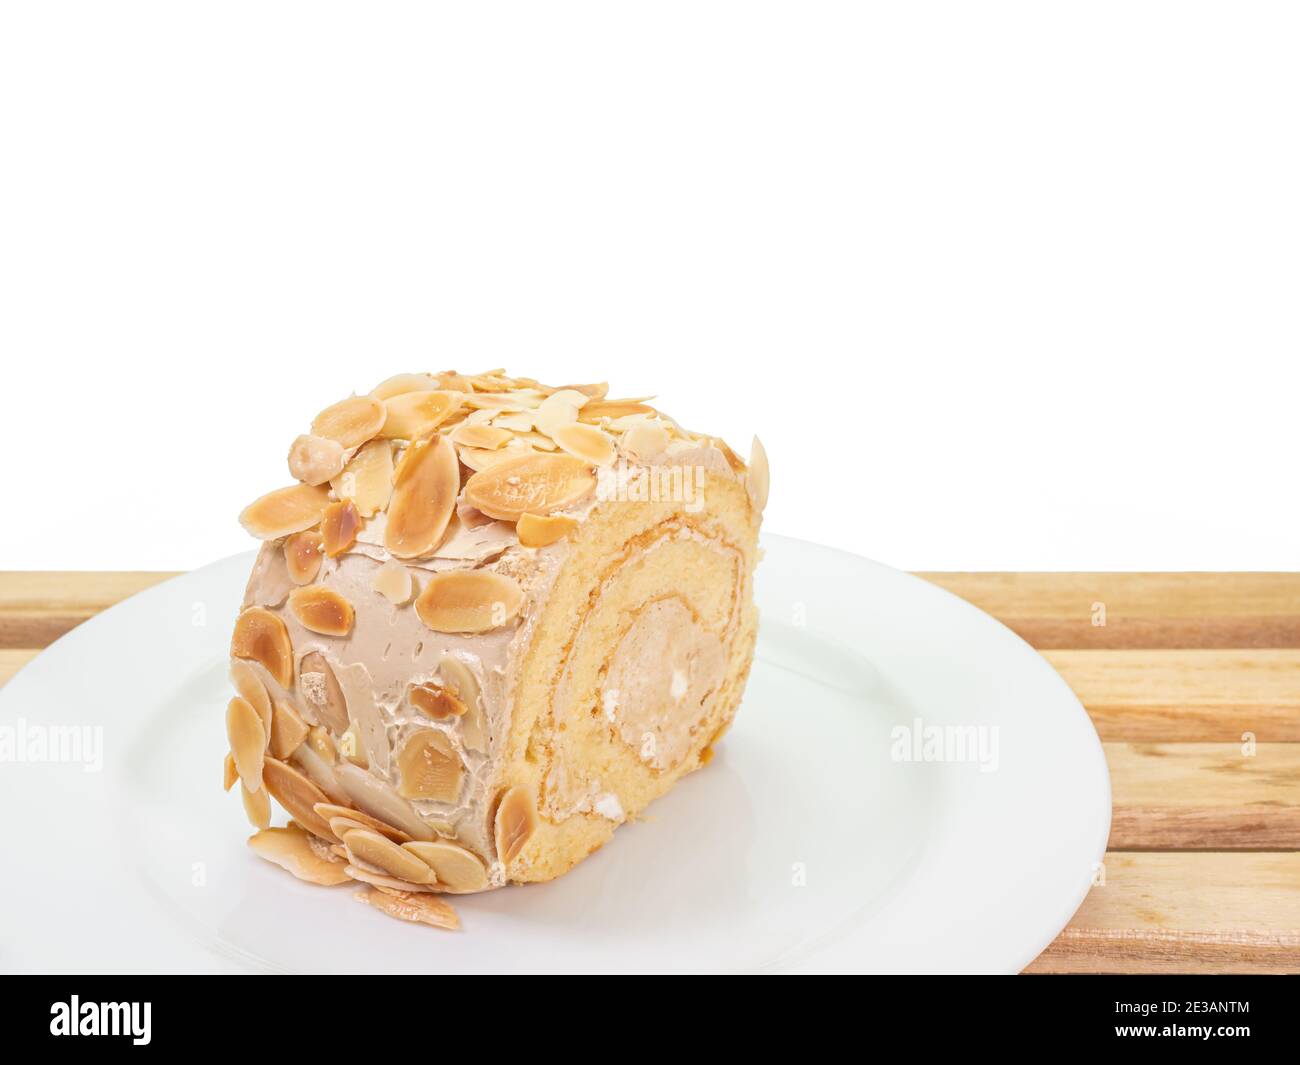 Die Nahaufnahme von köstlichen hausgemachten Mandel-Sahne-Brötchen Kuchen Bäckerei Dessert Essen auf Holzbrett auf weißem Hintergrund. Stockfoto